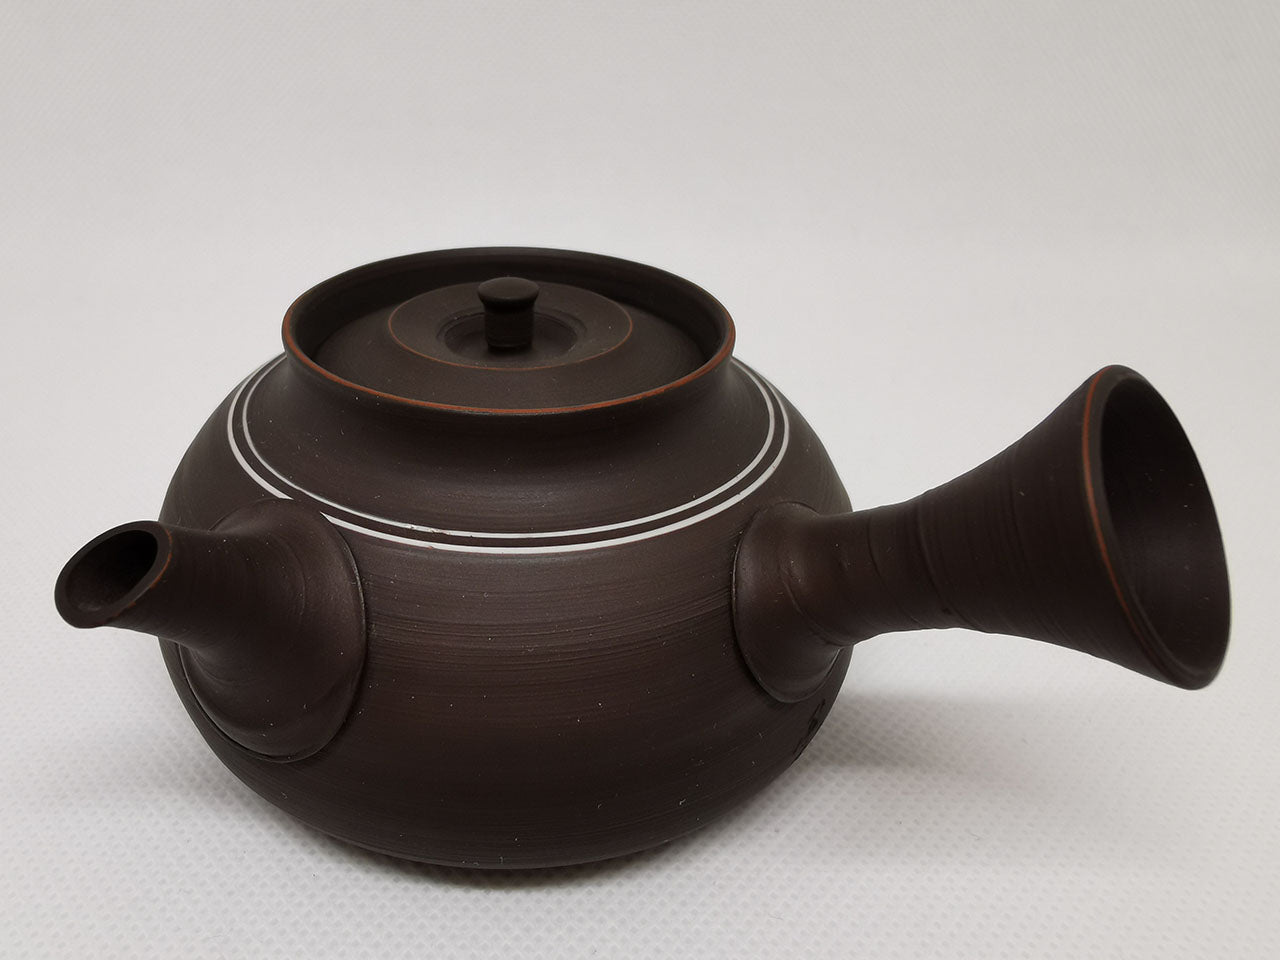 Tea supplies, Kyusu teapot, Black inlay - Fugetsu Murakoshi, Tokoname ware, Ceramics